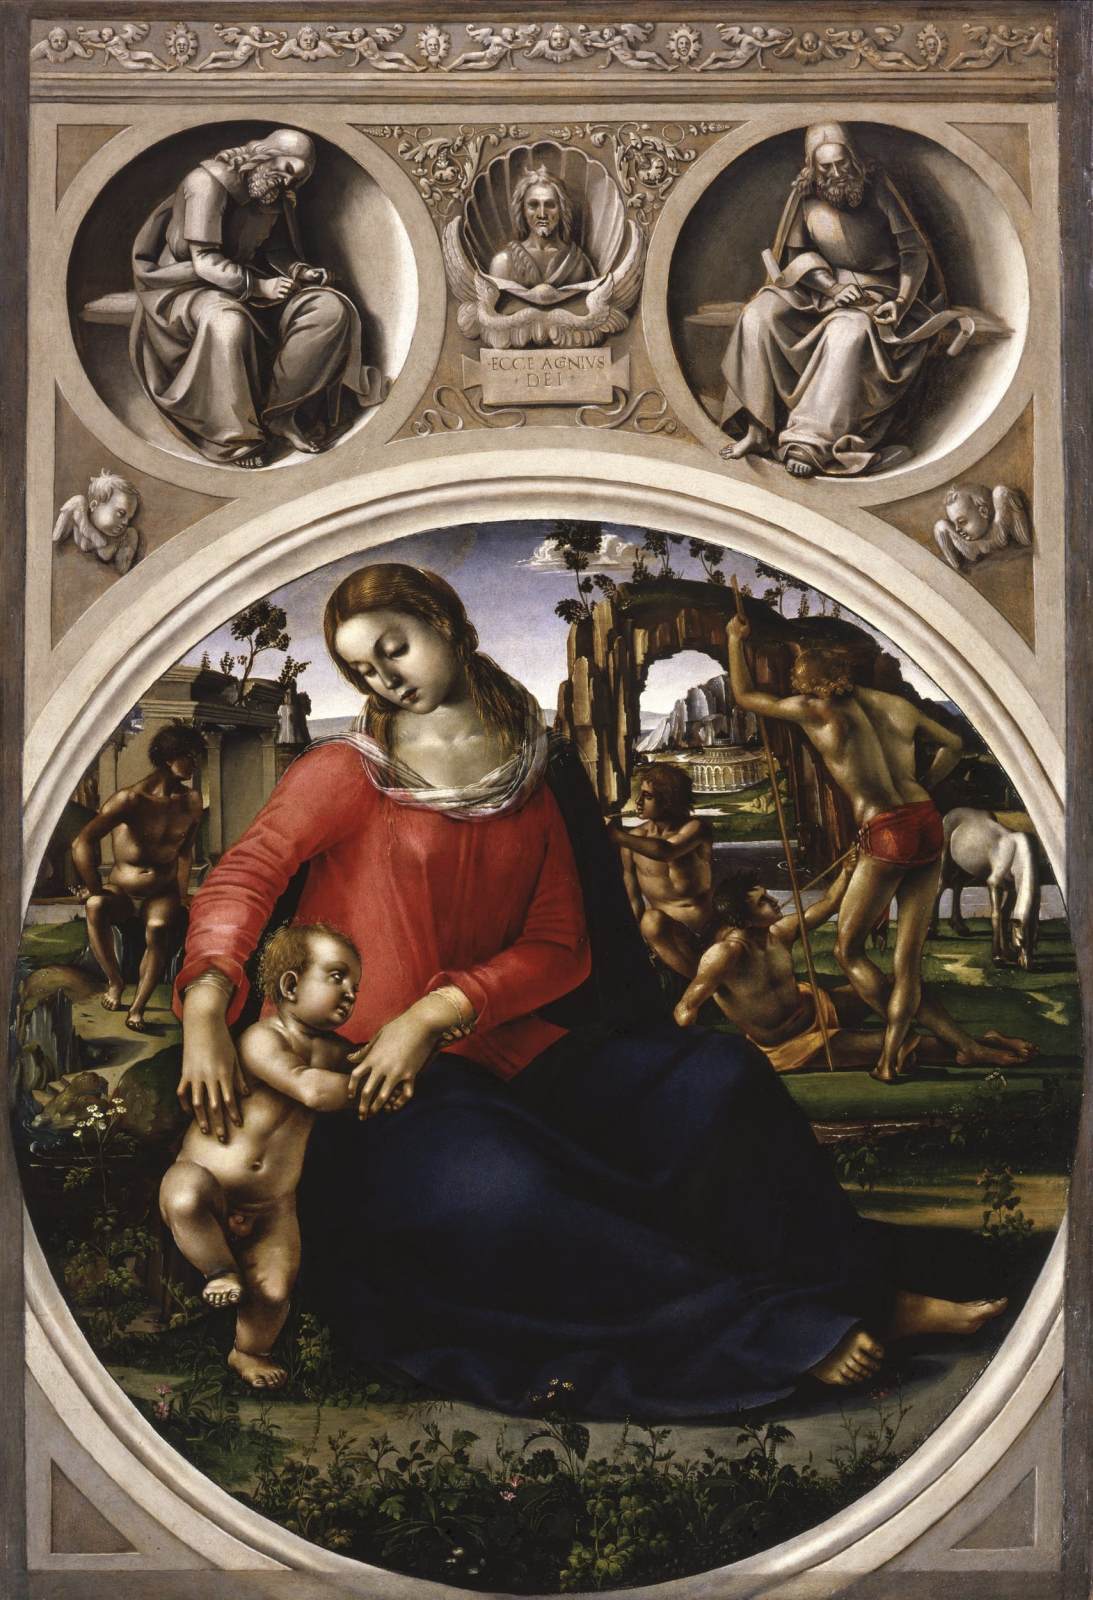 La Vergine e il bambino